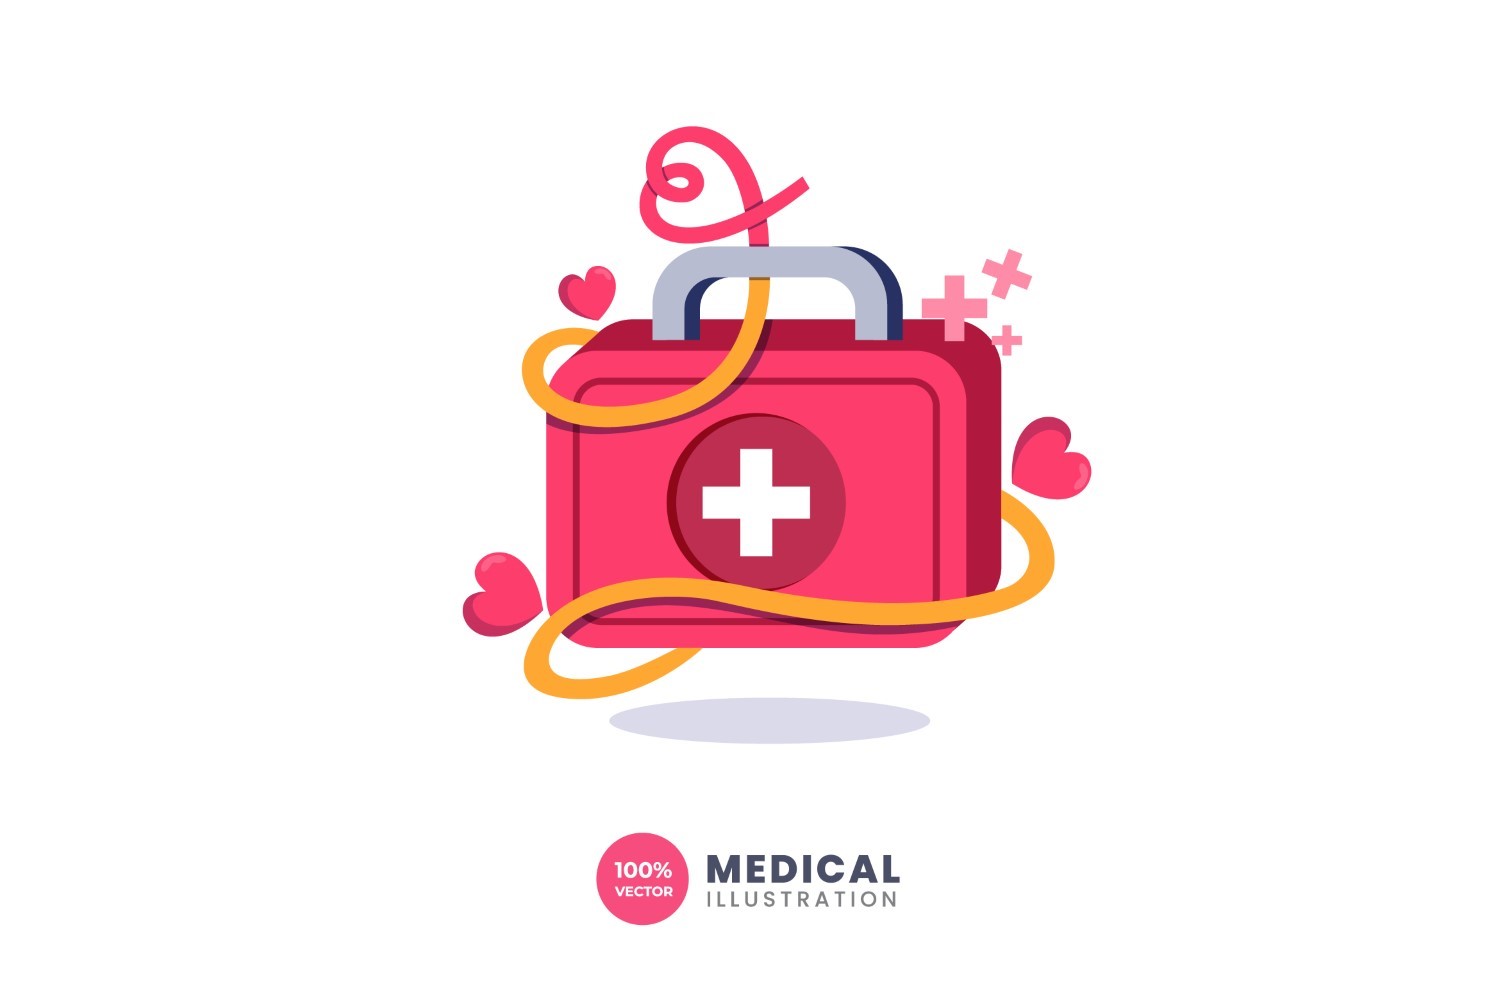 Medical Kit Bag Illustration